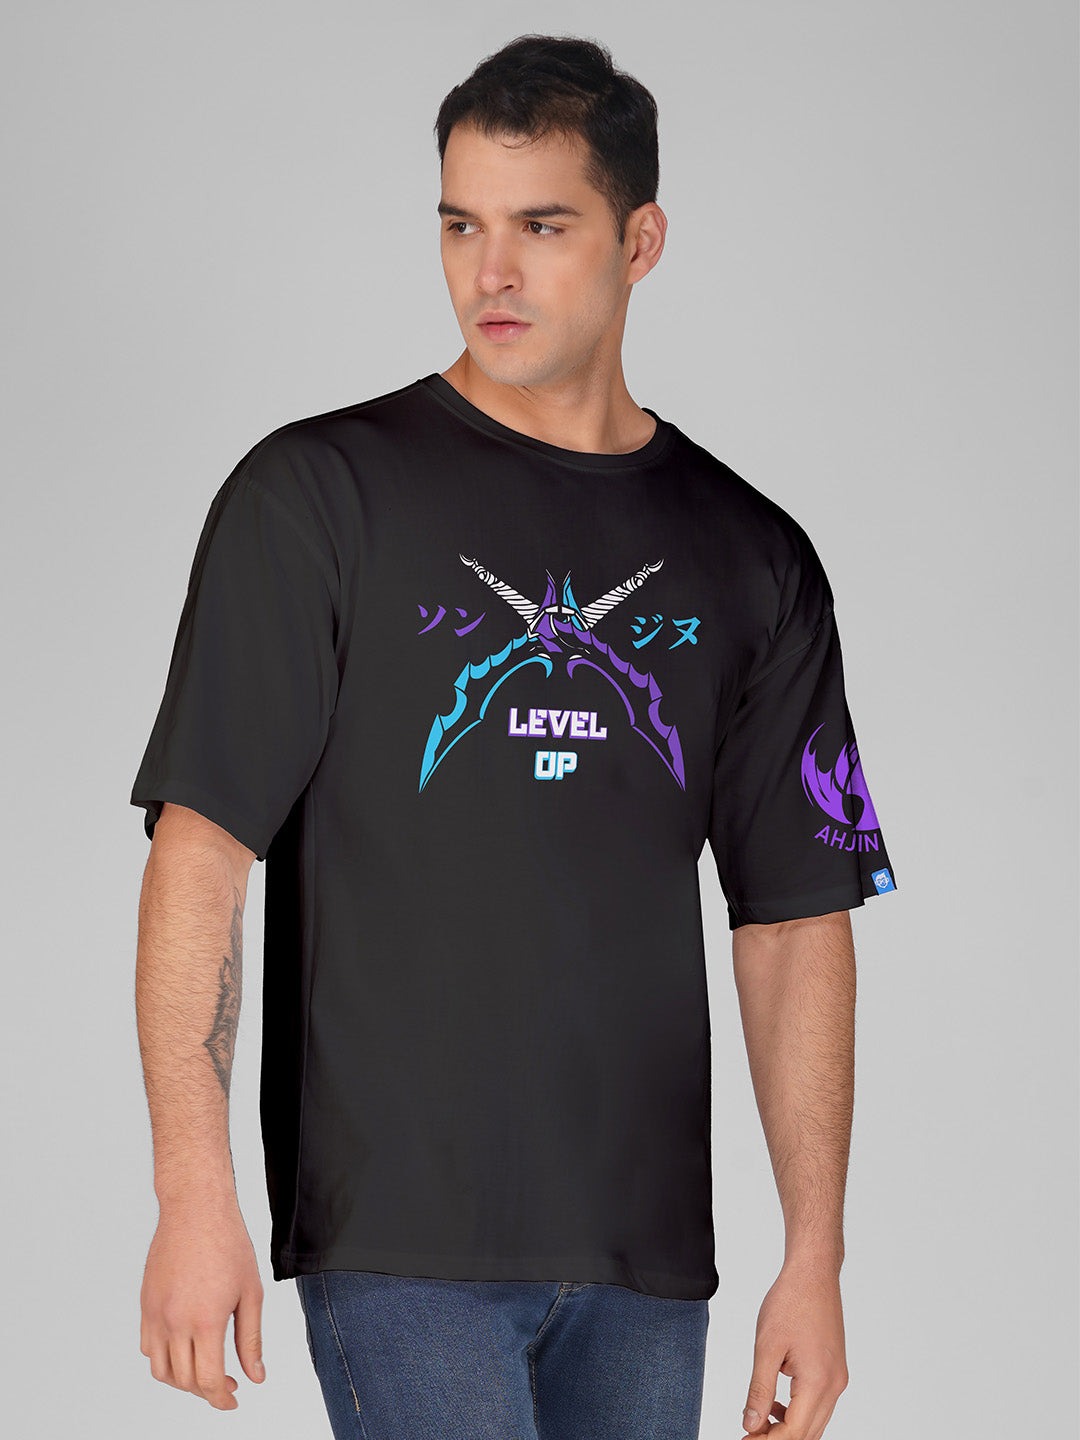 Solo Leveling Level Up Oversized T-Shirt